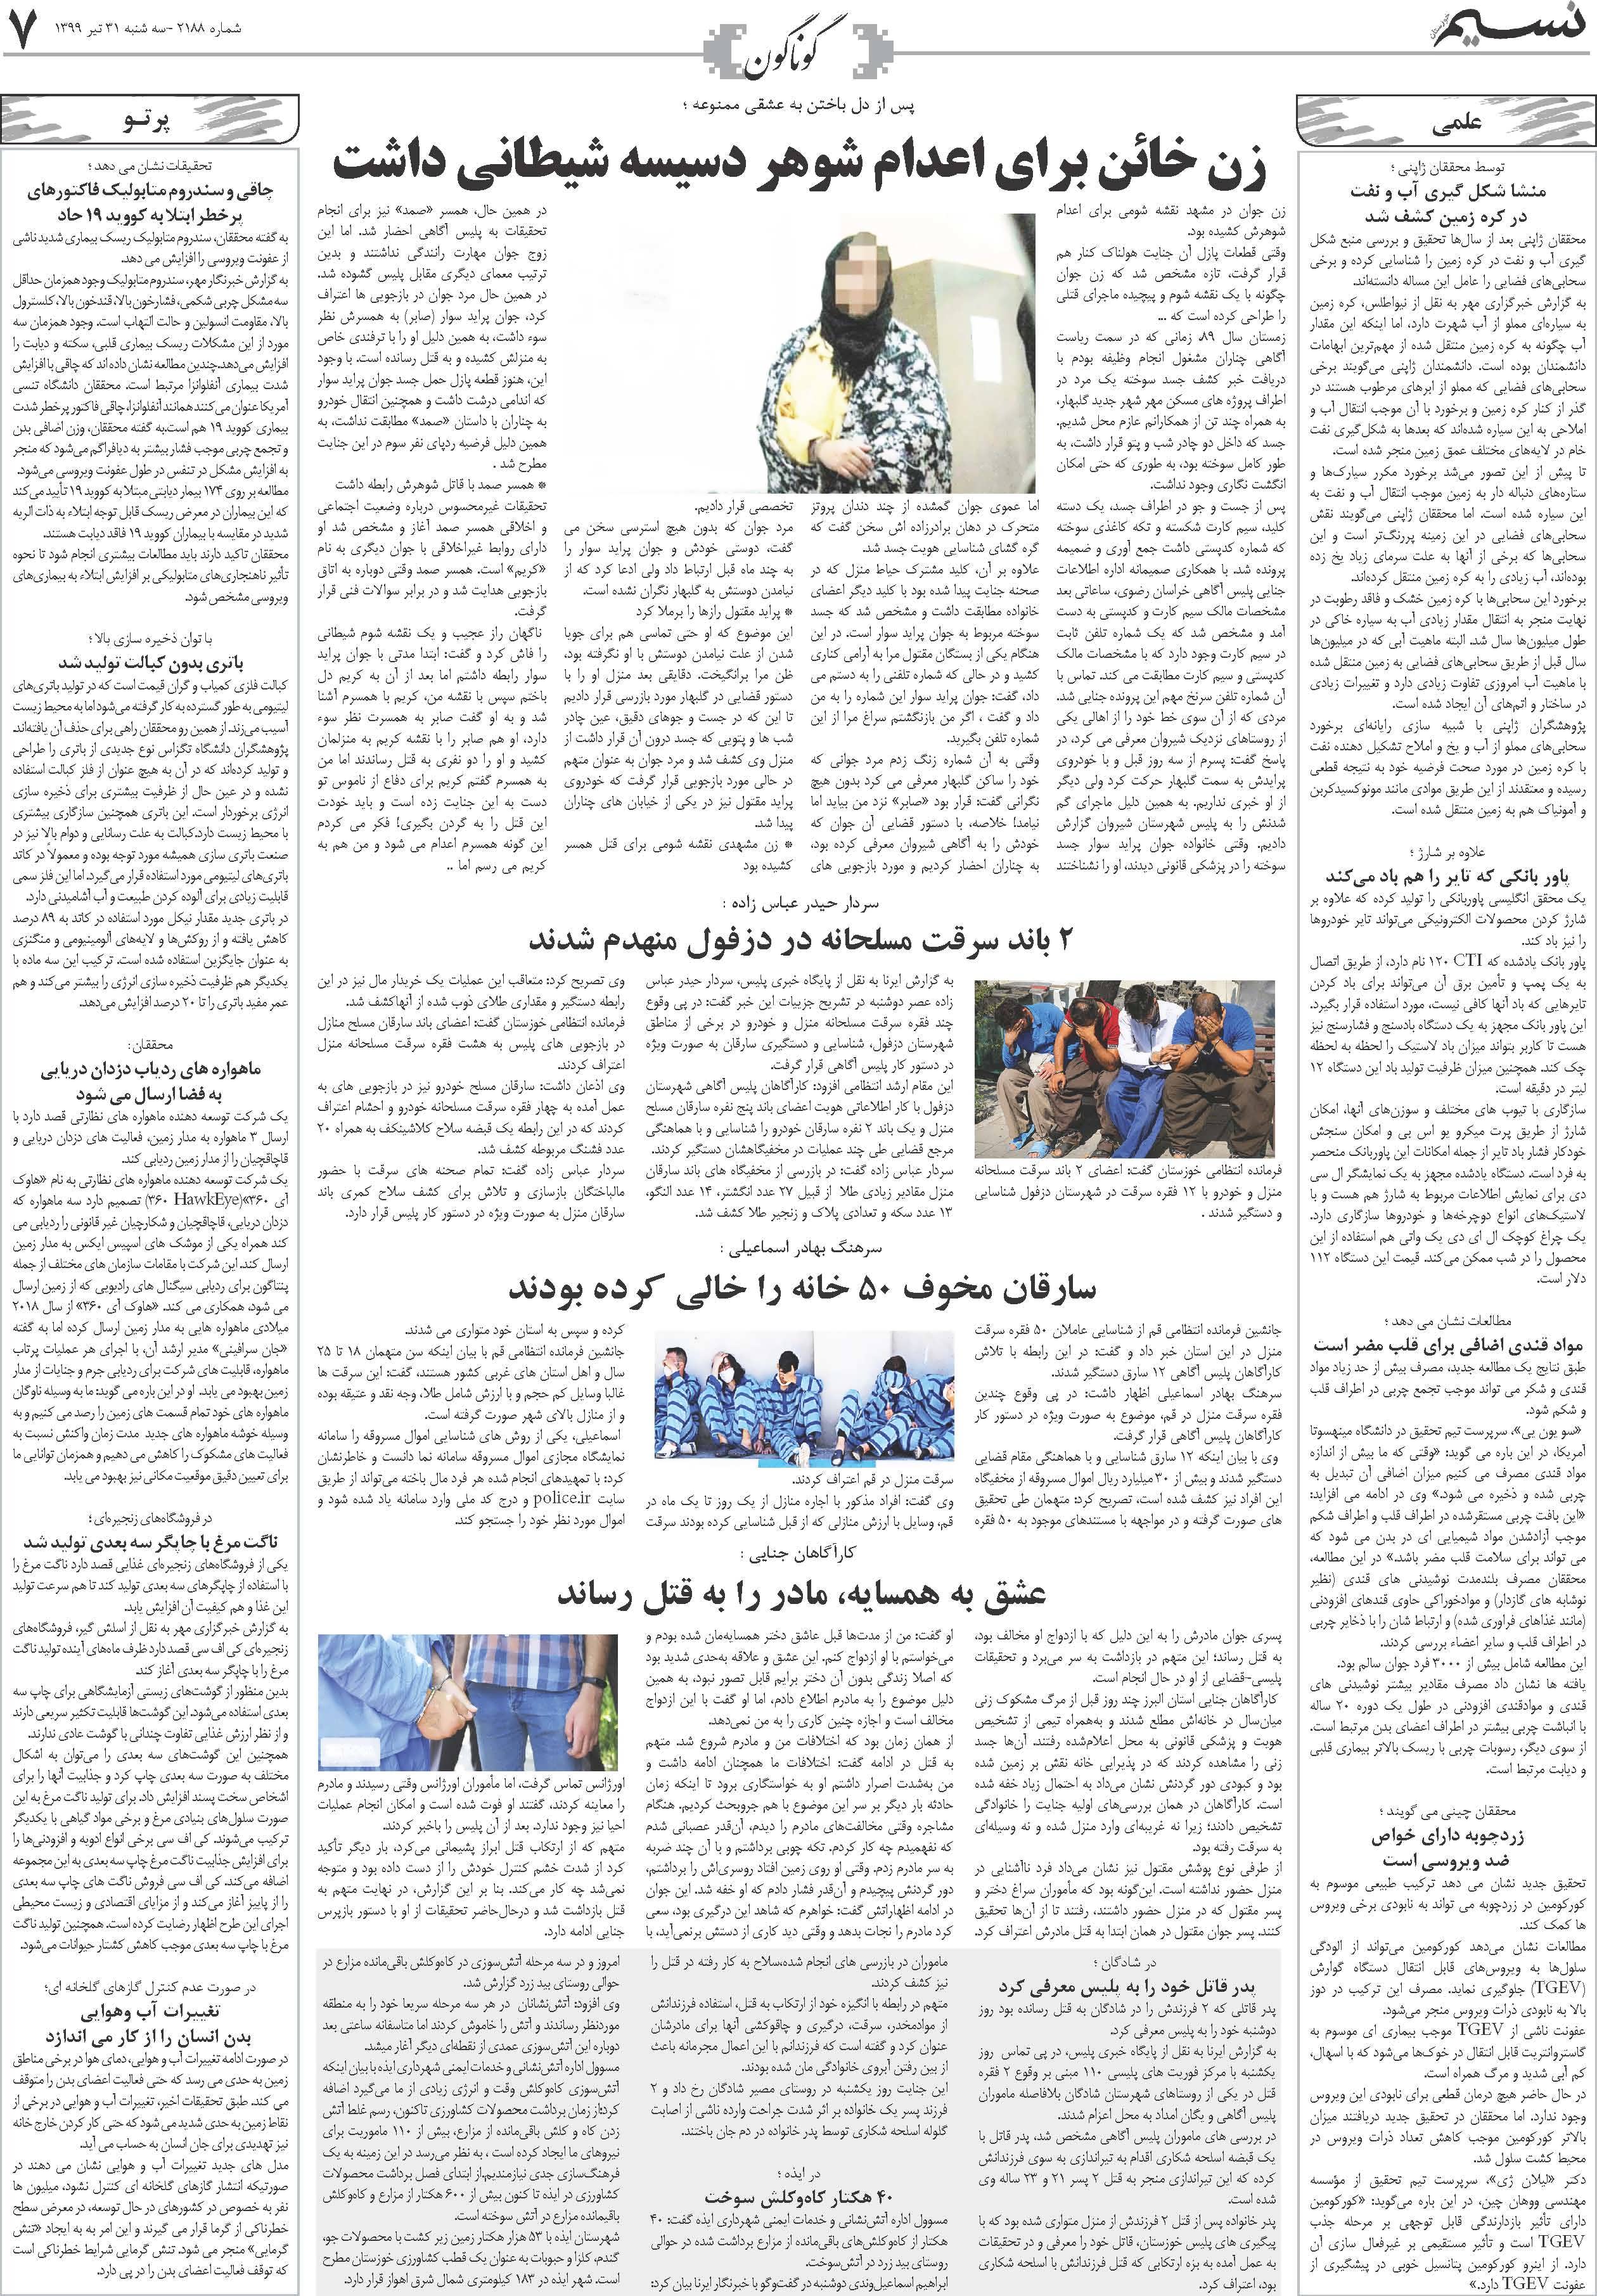 صفحه گوناگون روزنامه نسیم شماره 2188